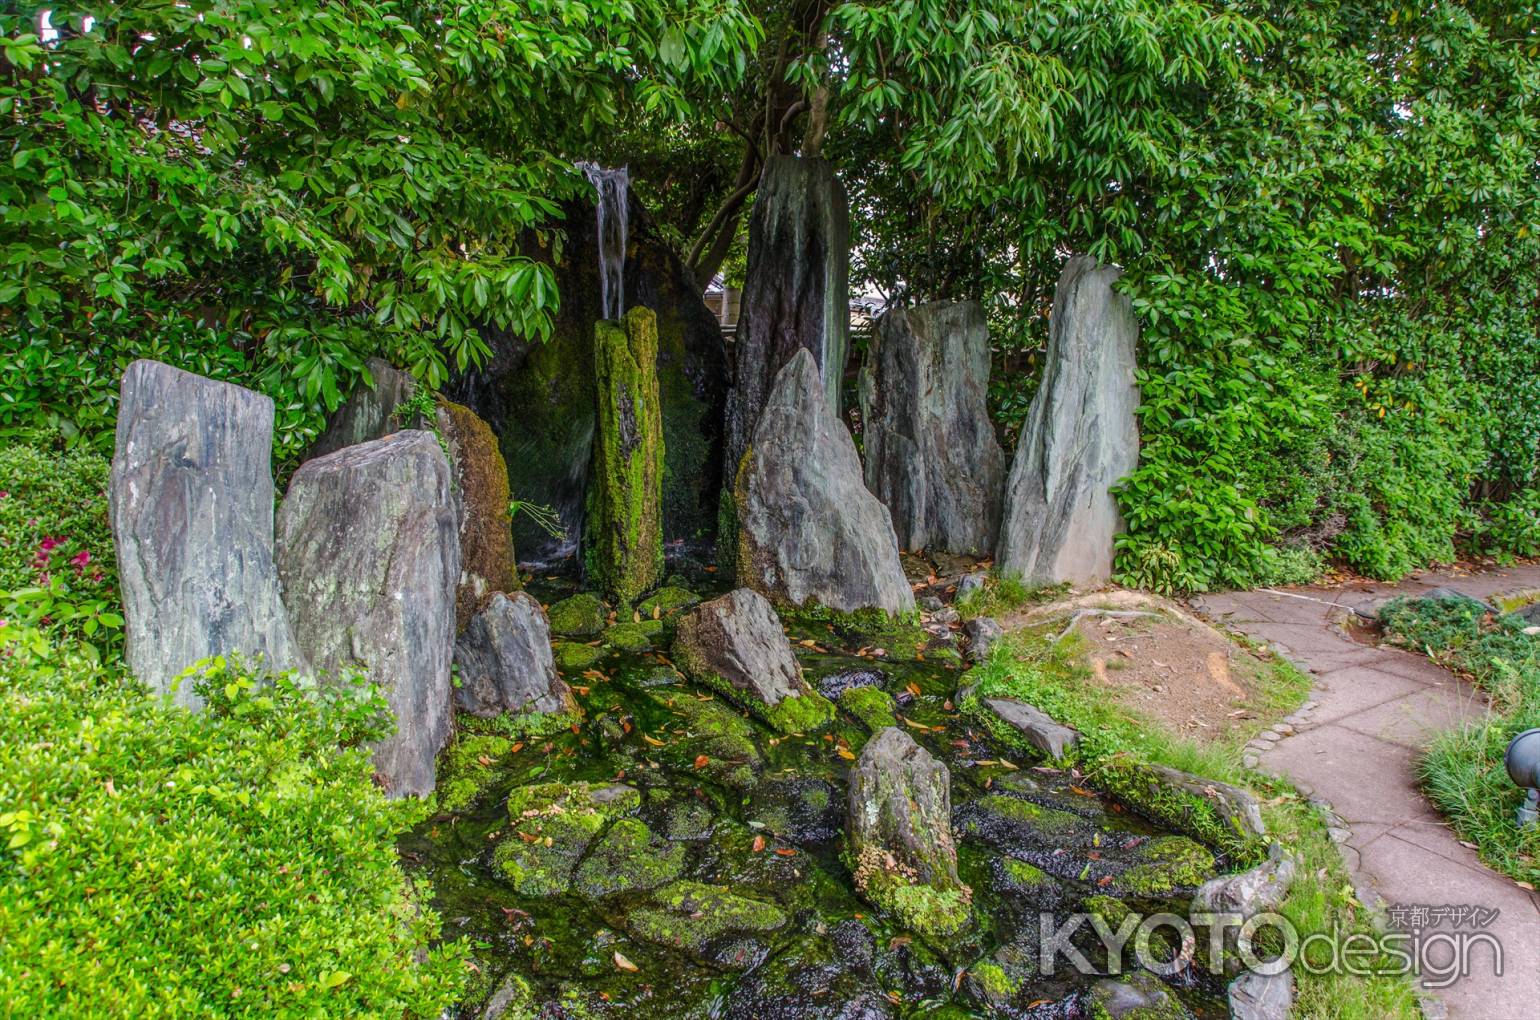 松尾大社は松風苑三庭の一つ、蓬莱の庭の龍門瀑